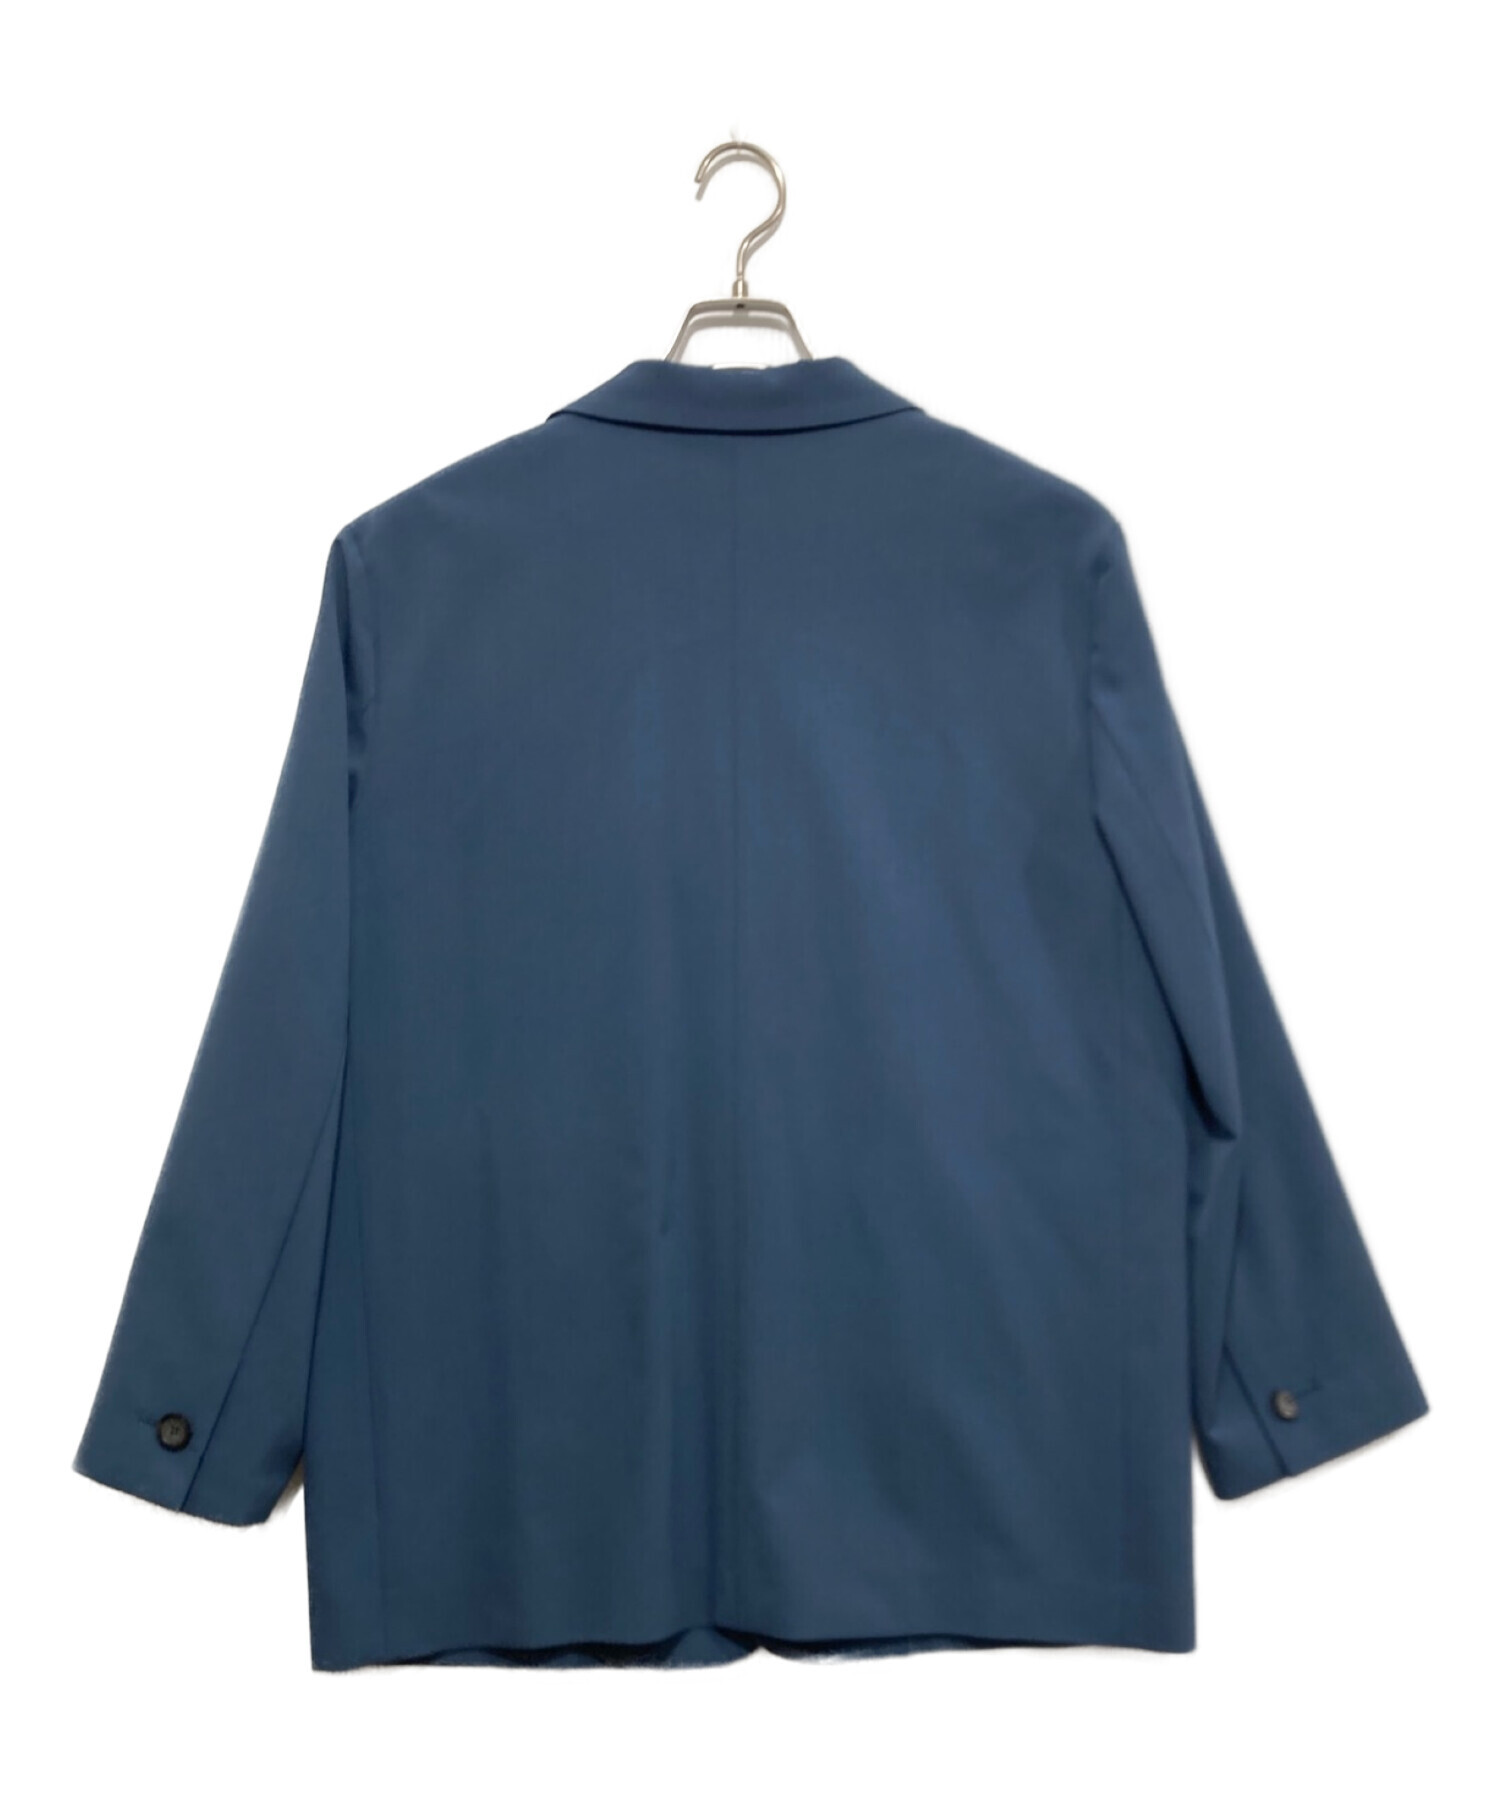 MIESROHE (ミースロエ) リラクシーウールテーラードジャケット ブルー サイズ:1